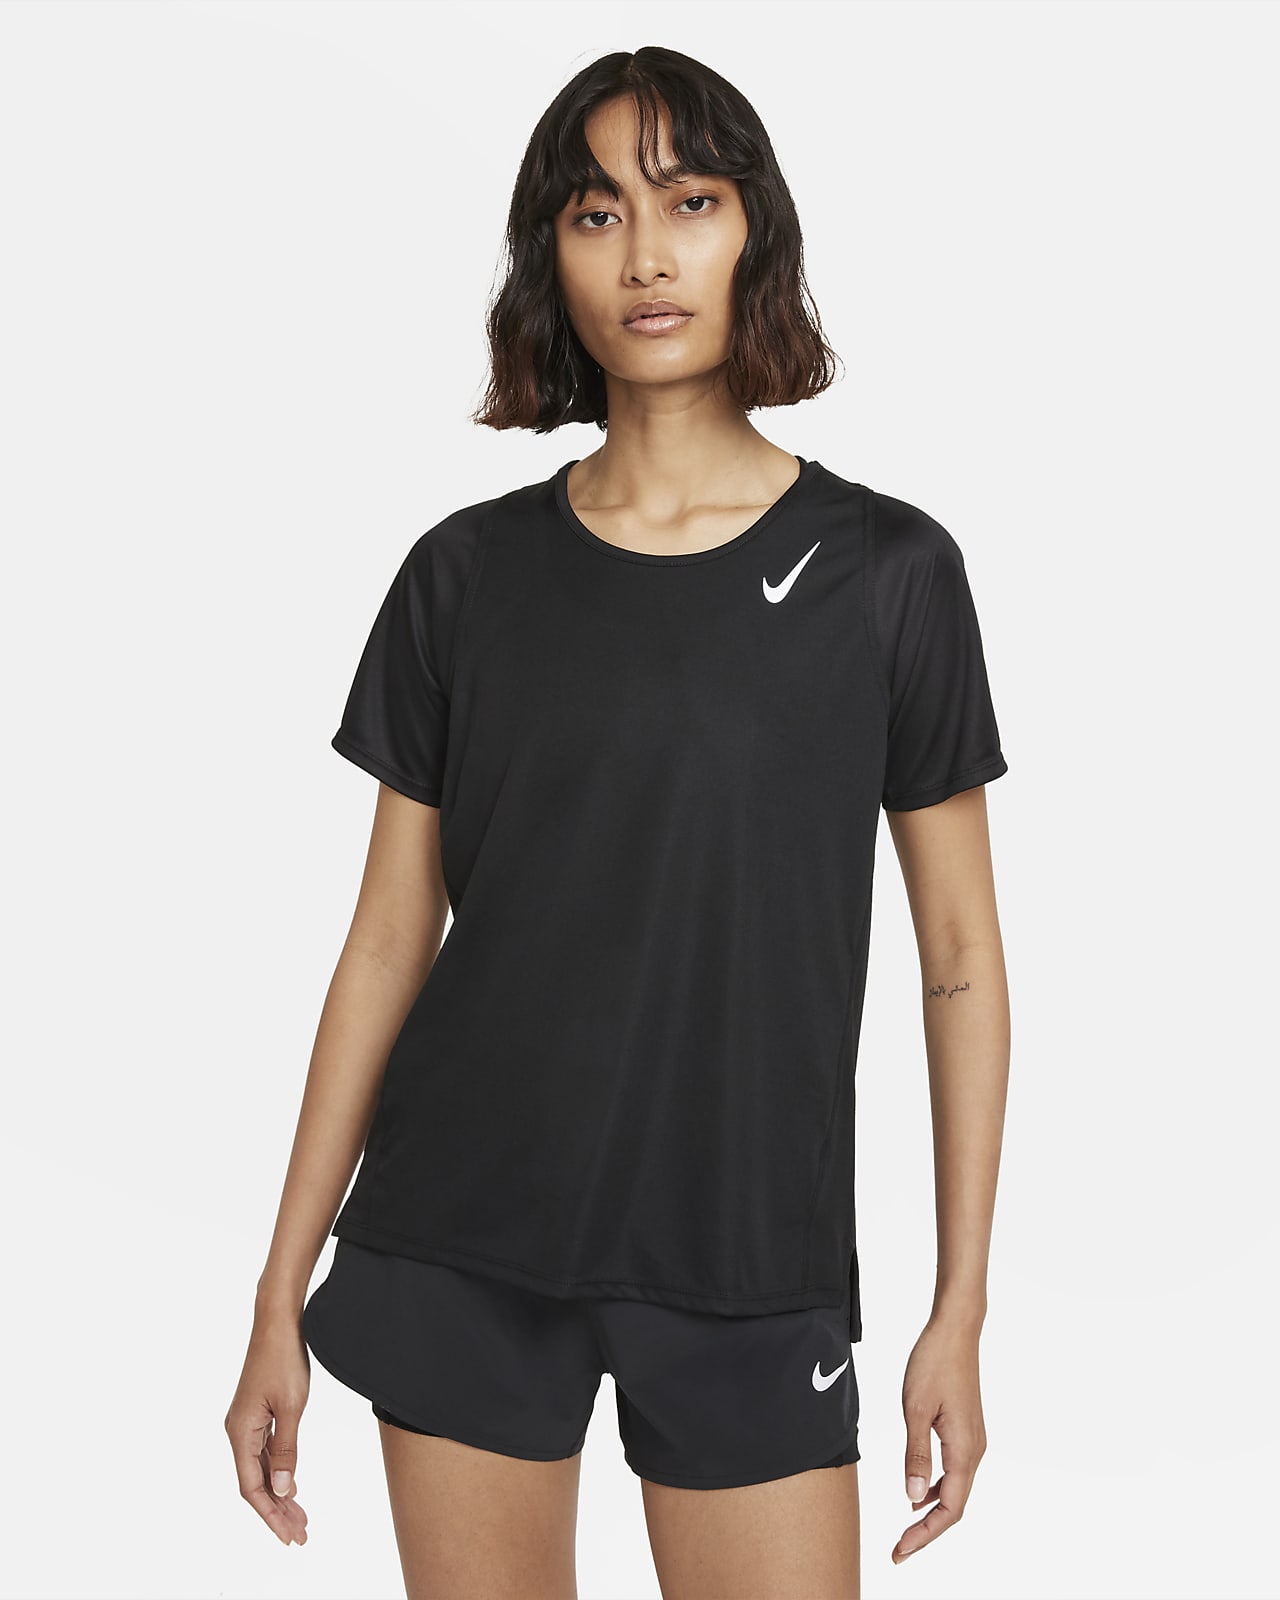 Dámské běžecké tričko Nike Dri-FIT Race s krátkým rukávem